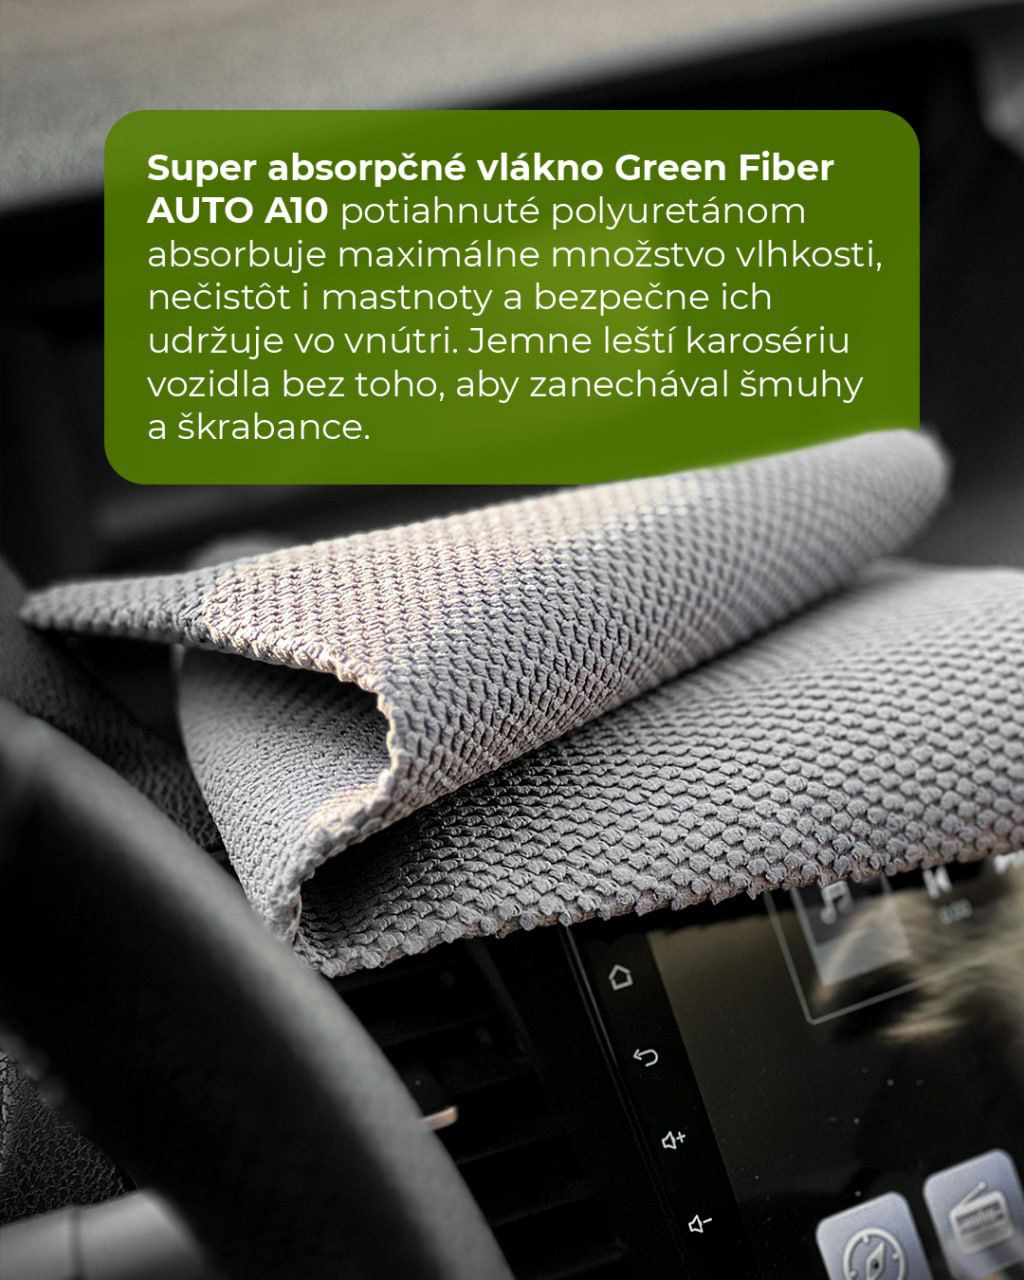 Super absorpčné vlákno má obojstranné polyuretánové pokrytie, vďaka ktorému dokáže absorbovať vodu niekoľkonásobne viac oproti svojej vlastnej hmotnosti. Vhodné na zrkadlá, plastové, chrómové a lakované povrchy vonku aj vnútri auta. Super absorpčné vlákna pomôžu utrieť karosériu auta do sucha len niekoľkými pohybmi. 